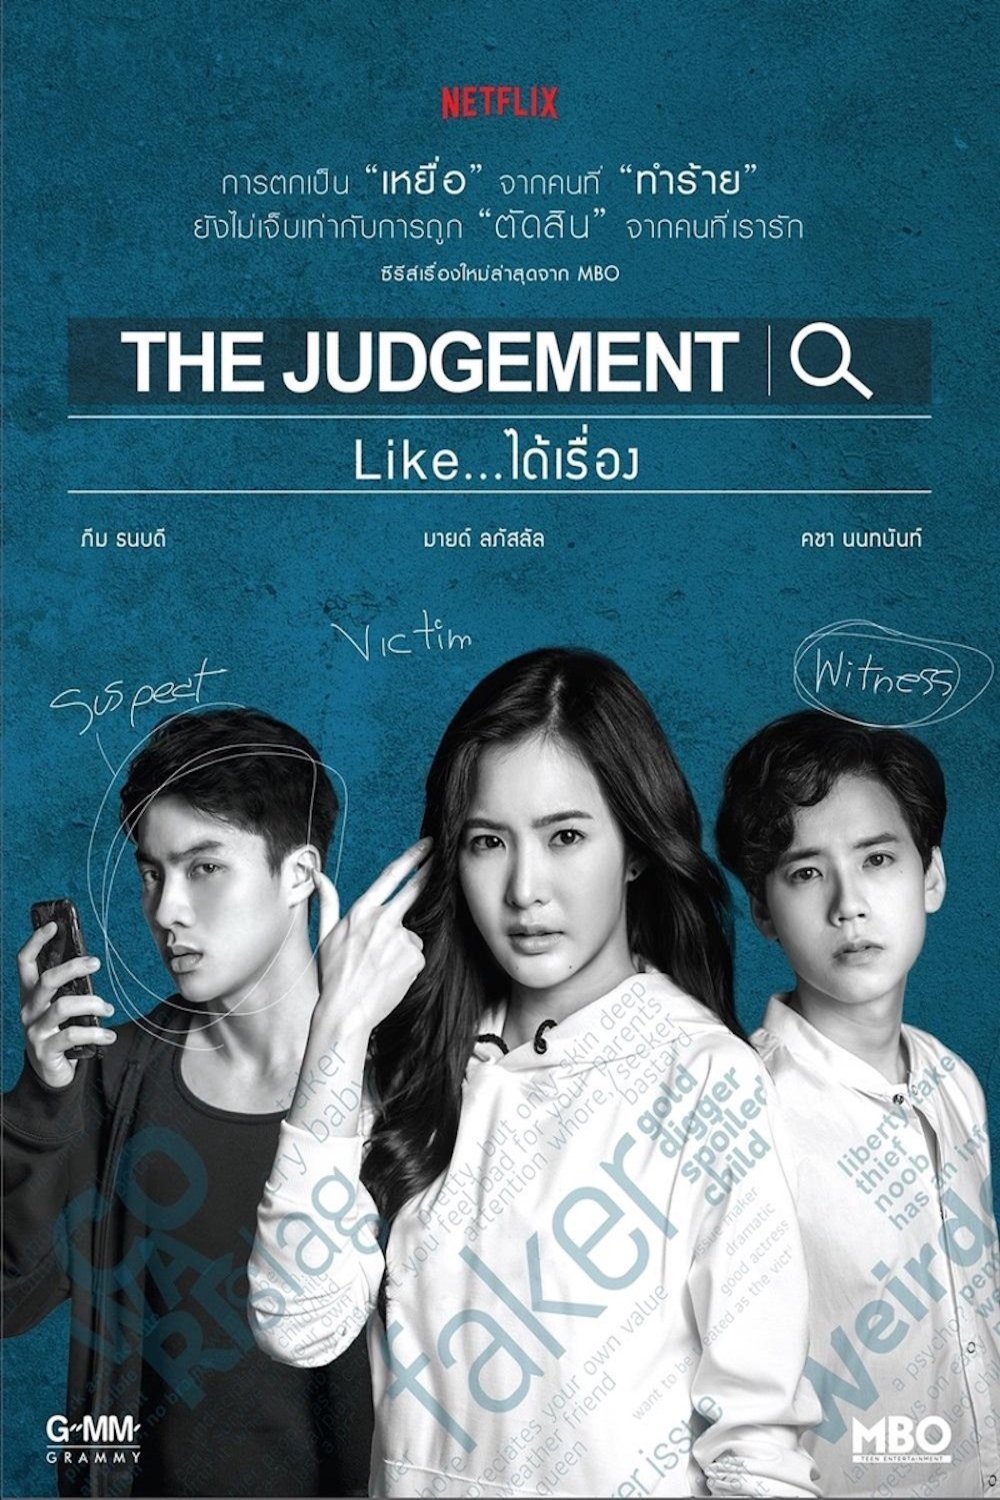 L'affiche originale du film The Judgement en Thaïlandais